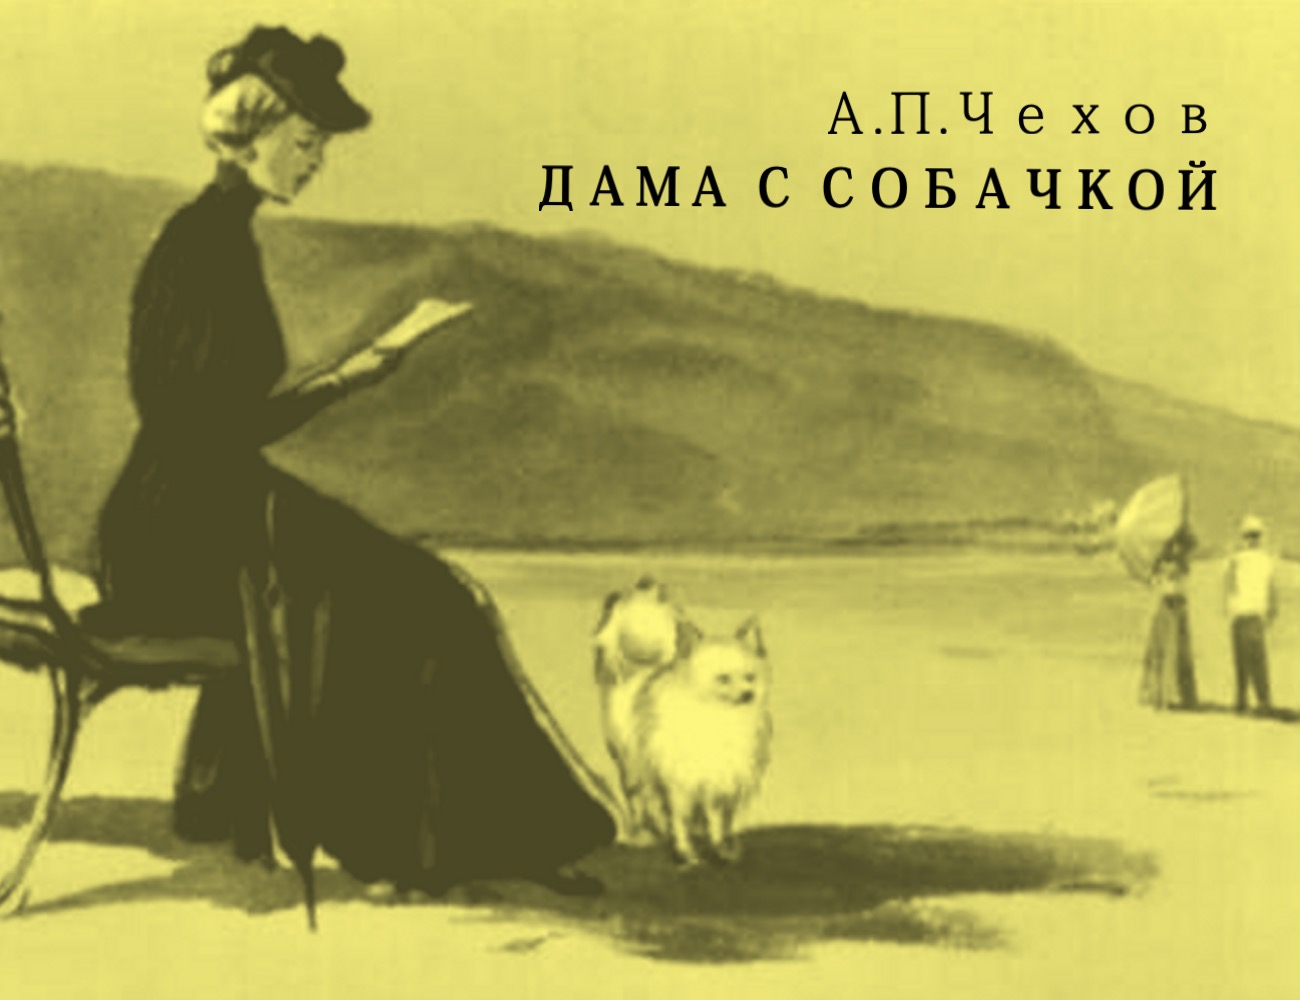 Дама с собачкой: анализ произведения чехова, жанр, сюжет, тема и основная мысль